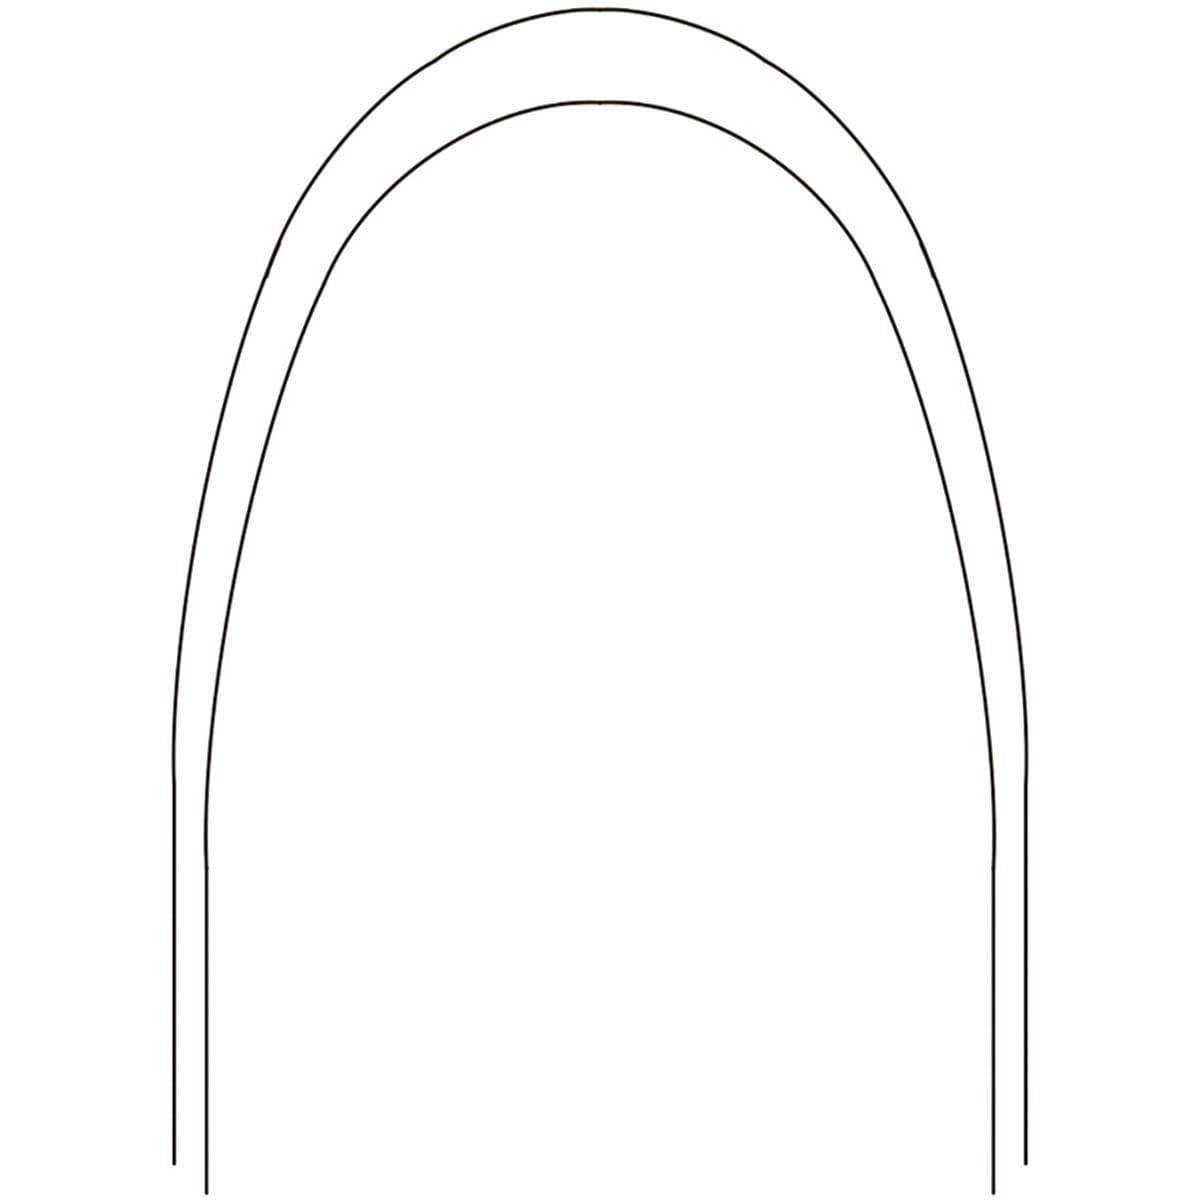 Archwire Bio-Kinetix Oval Arch Form III Shape 019x025 Upper 10pk